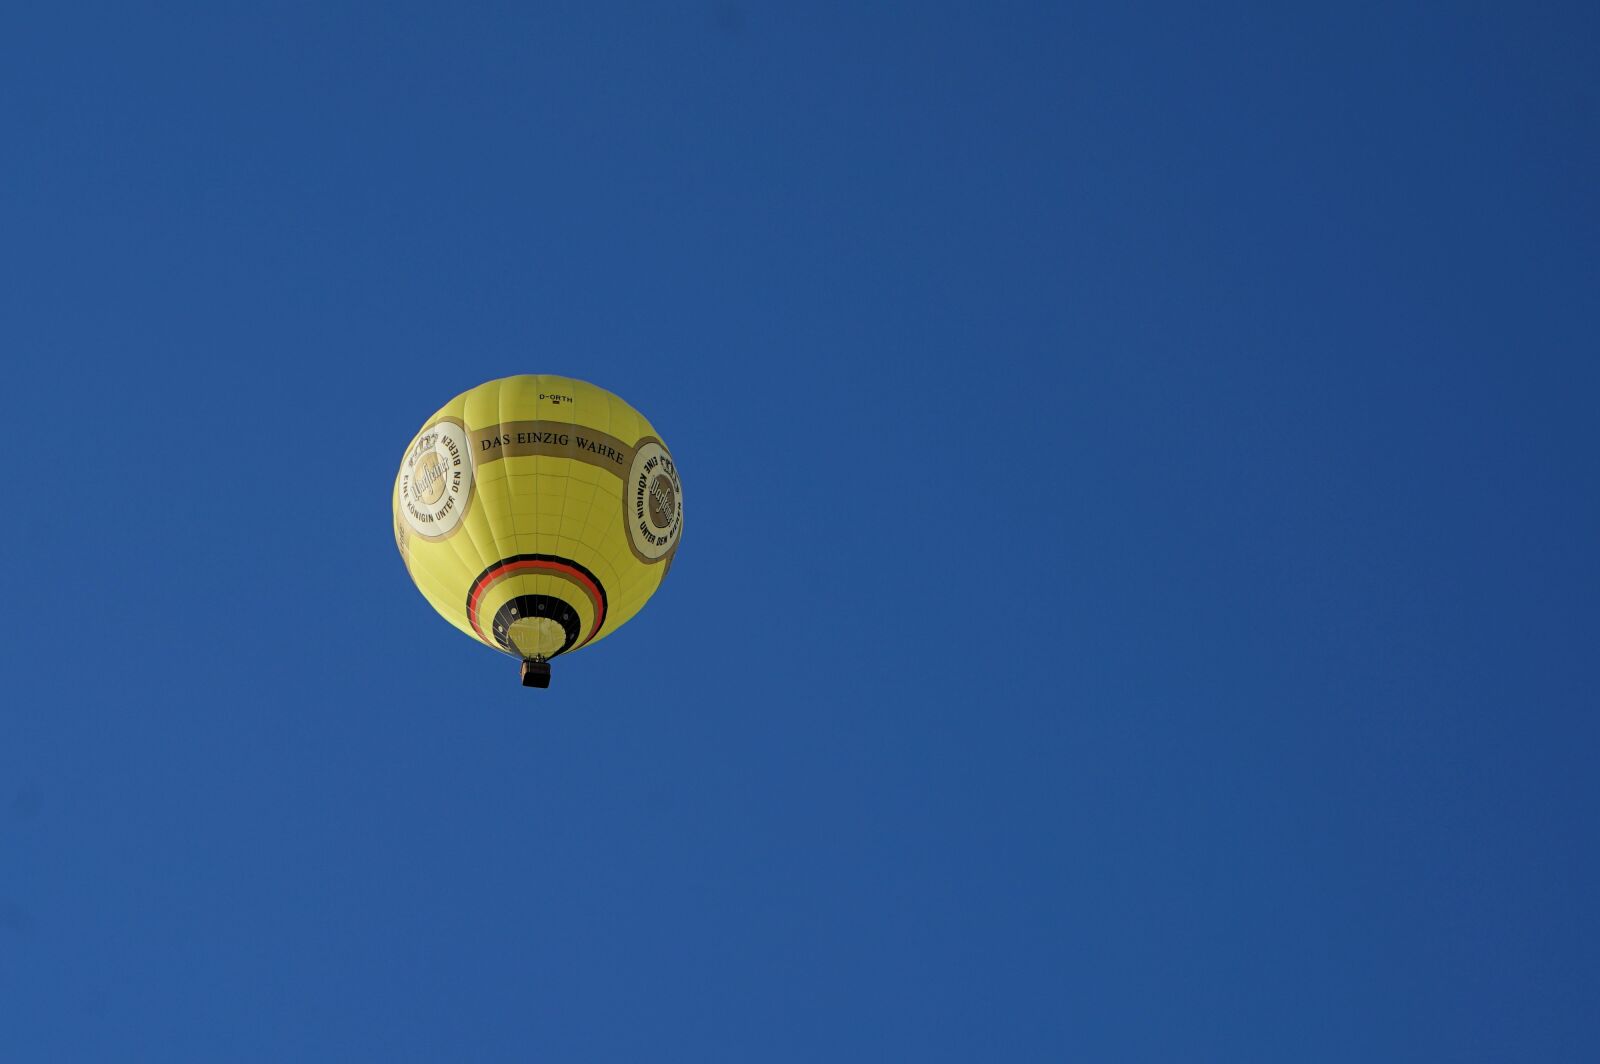 Sony Vario Tessar T* FE 24-70mm F4 ZA OSS sample photo. Hot air balloon, balloon photography